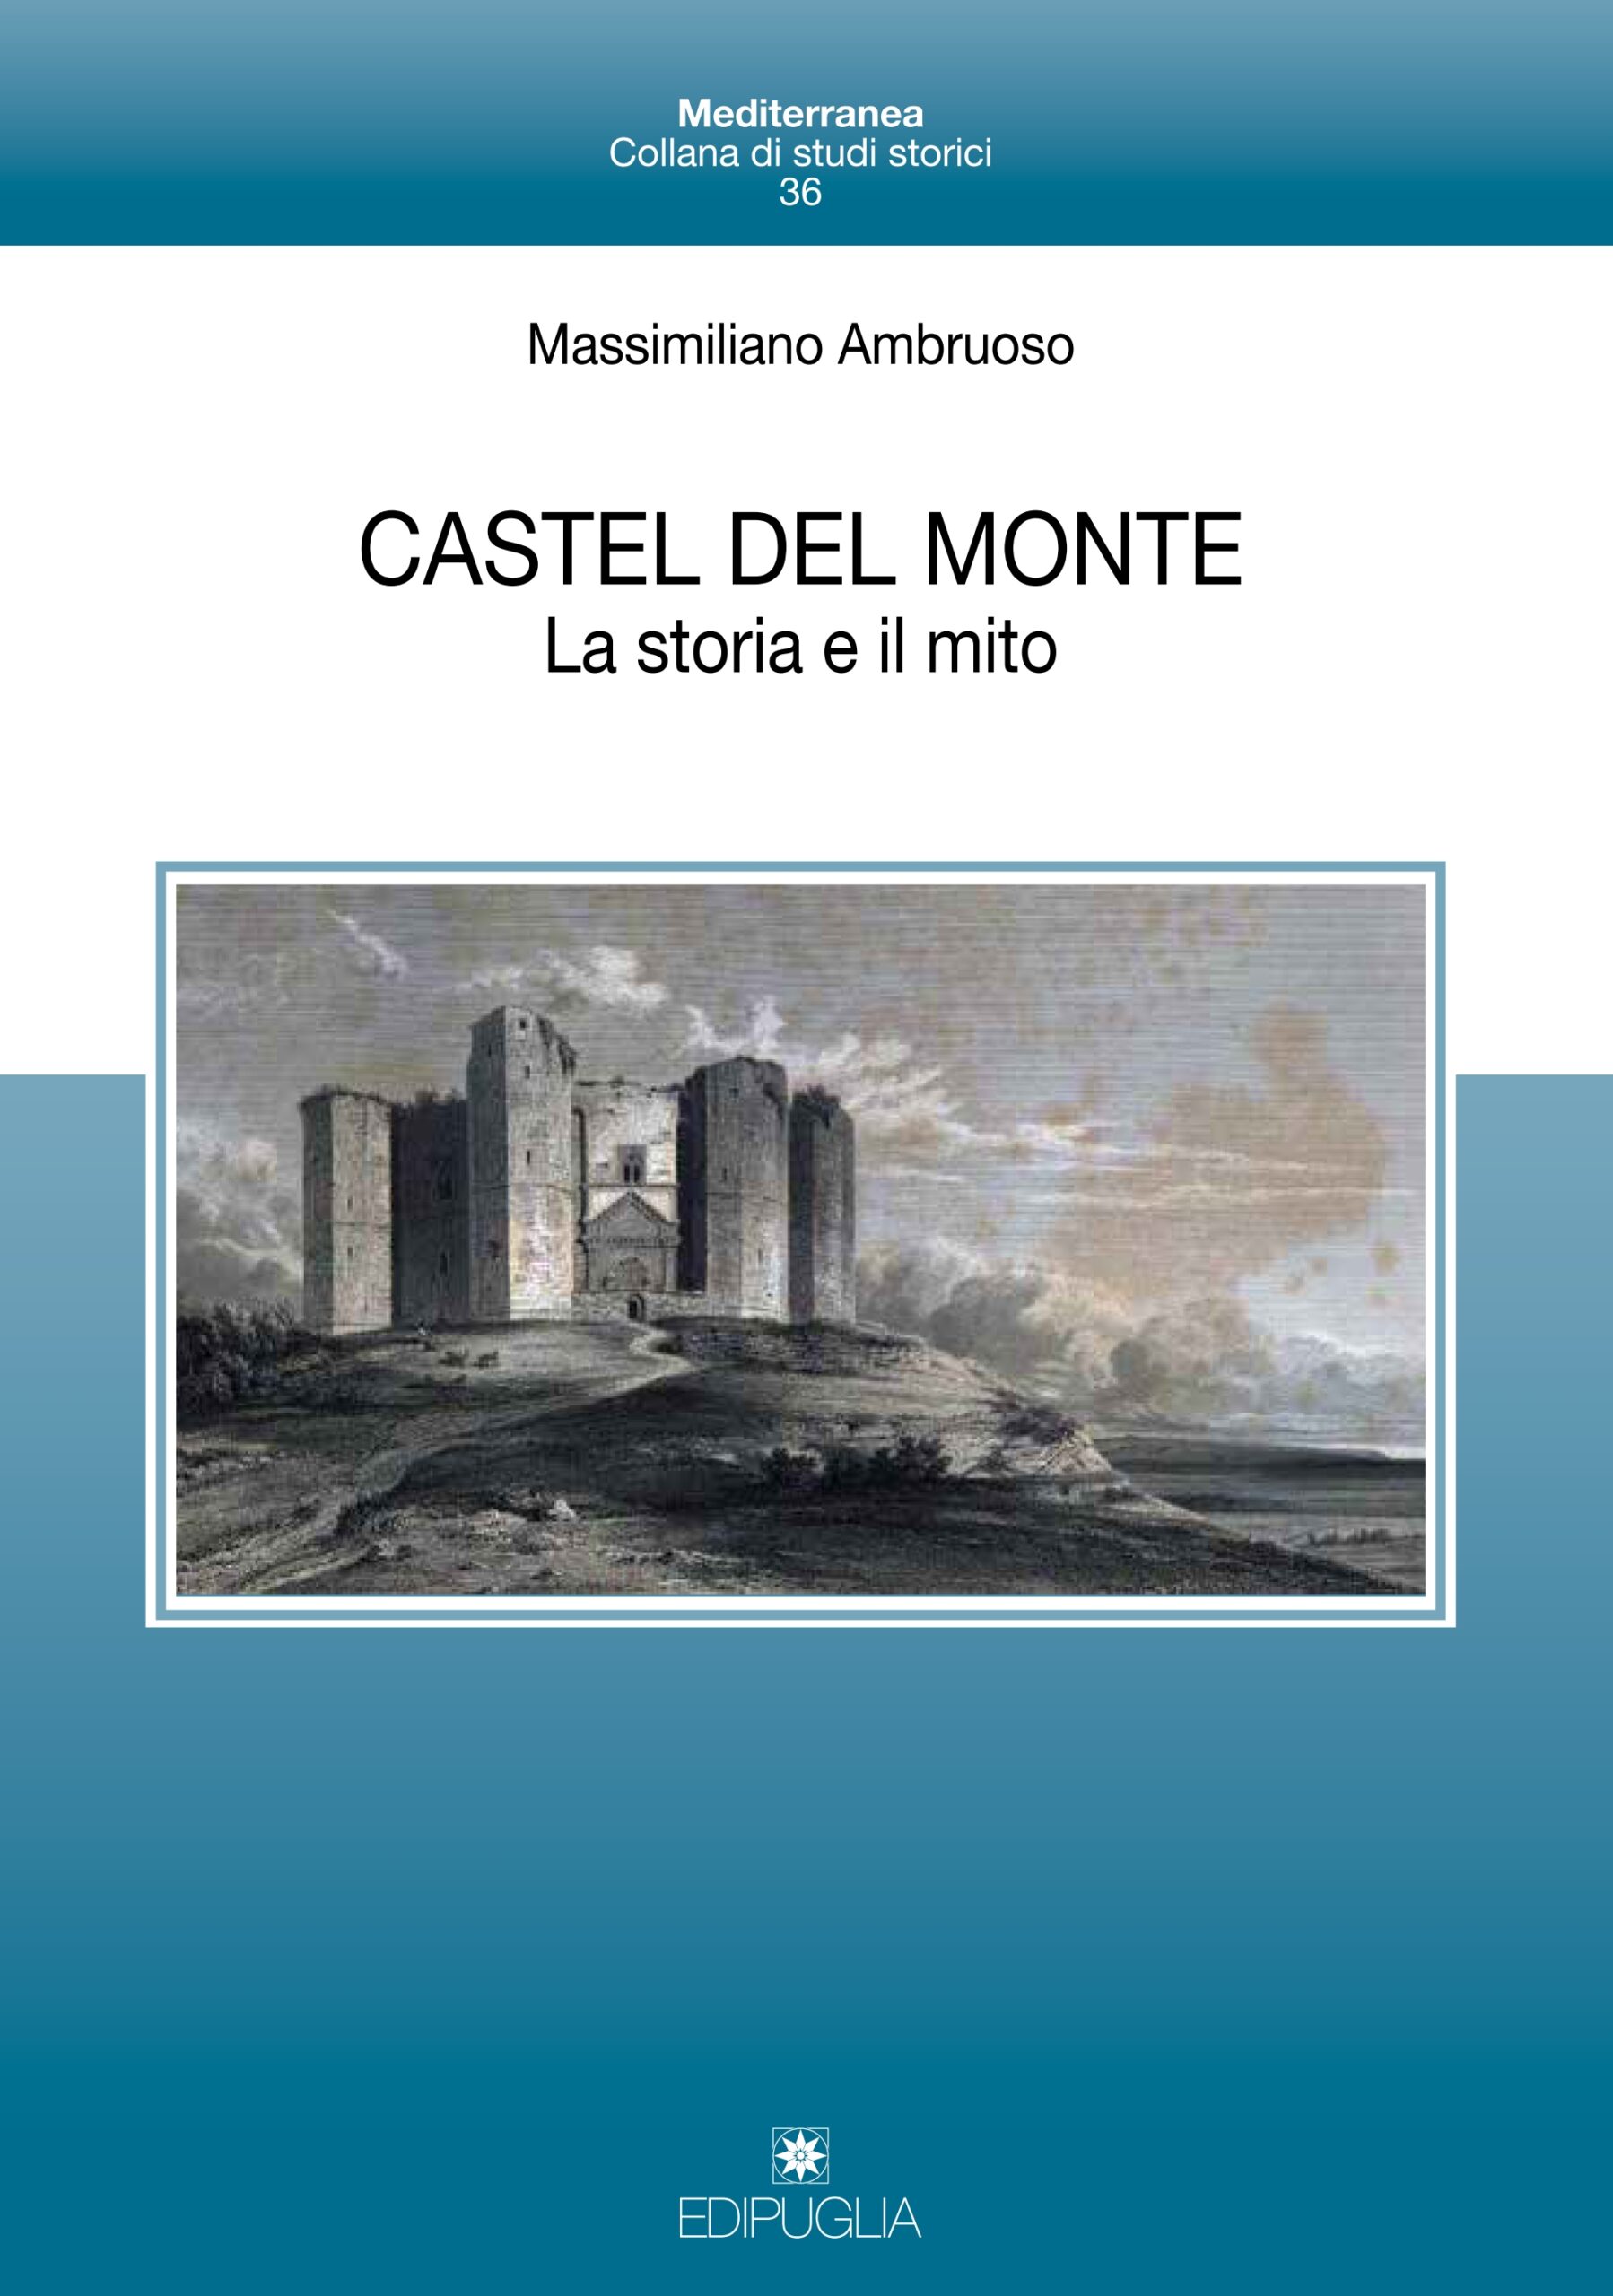 Castel del Monte, oltre gli stereotipi